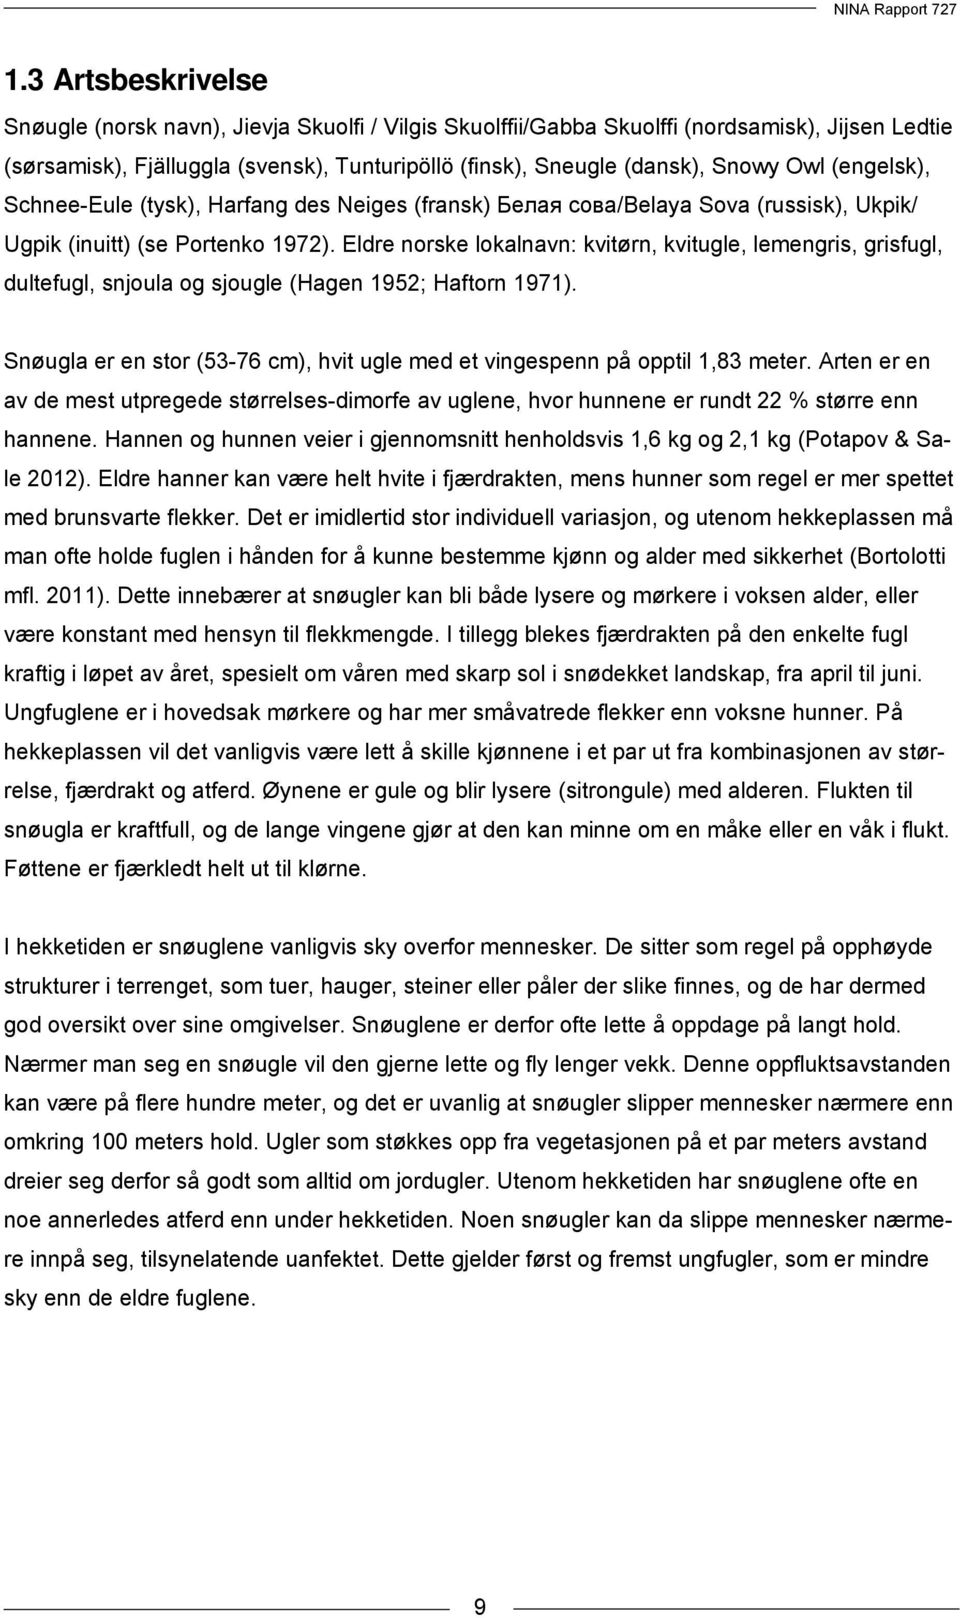 Eldre norske lokalnavn: kvitørn, kvitugle, lemengris, grisfugl, dultefugl, snjoula og sjougle (Hagen 1952; Haftorn 1971).